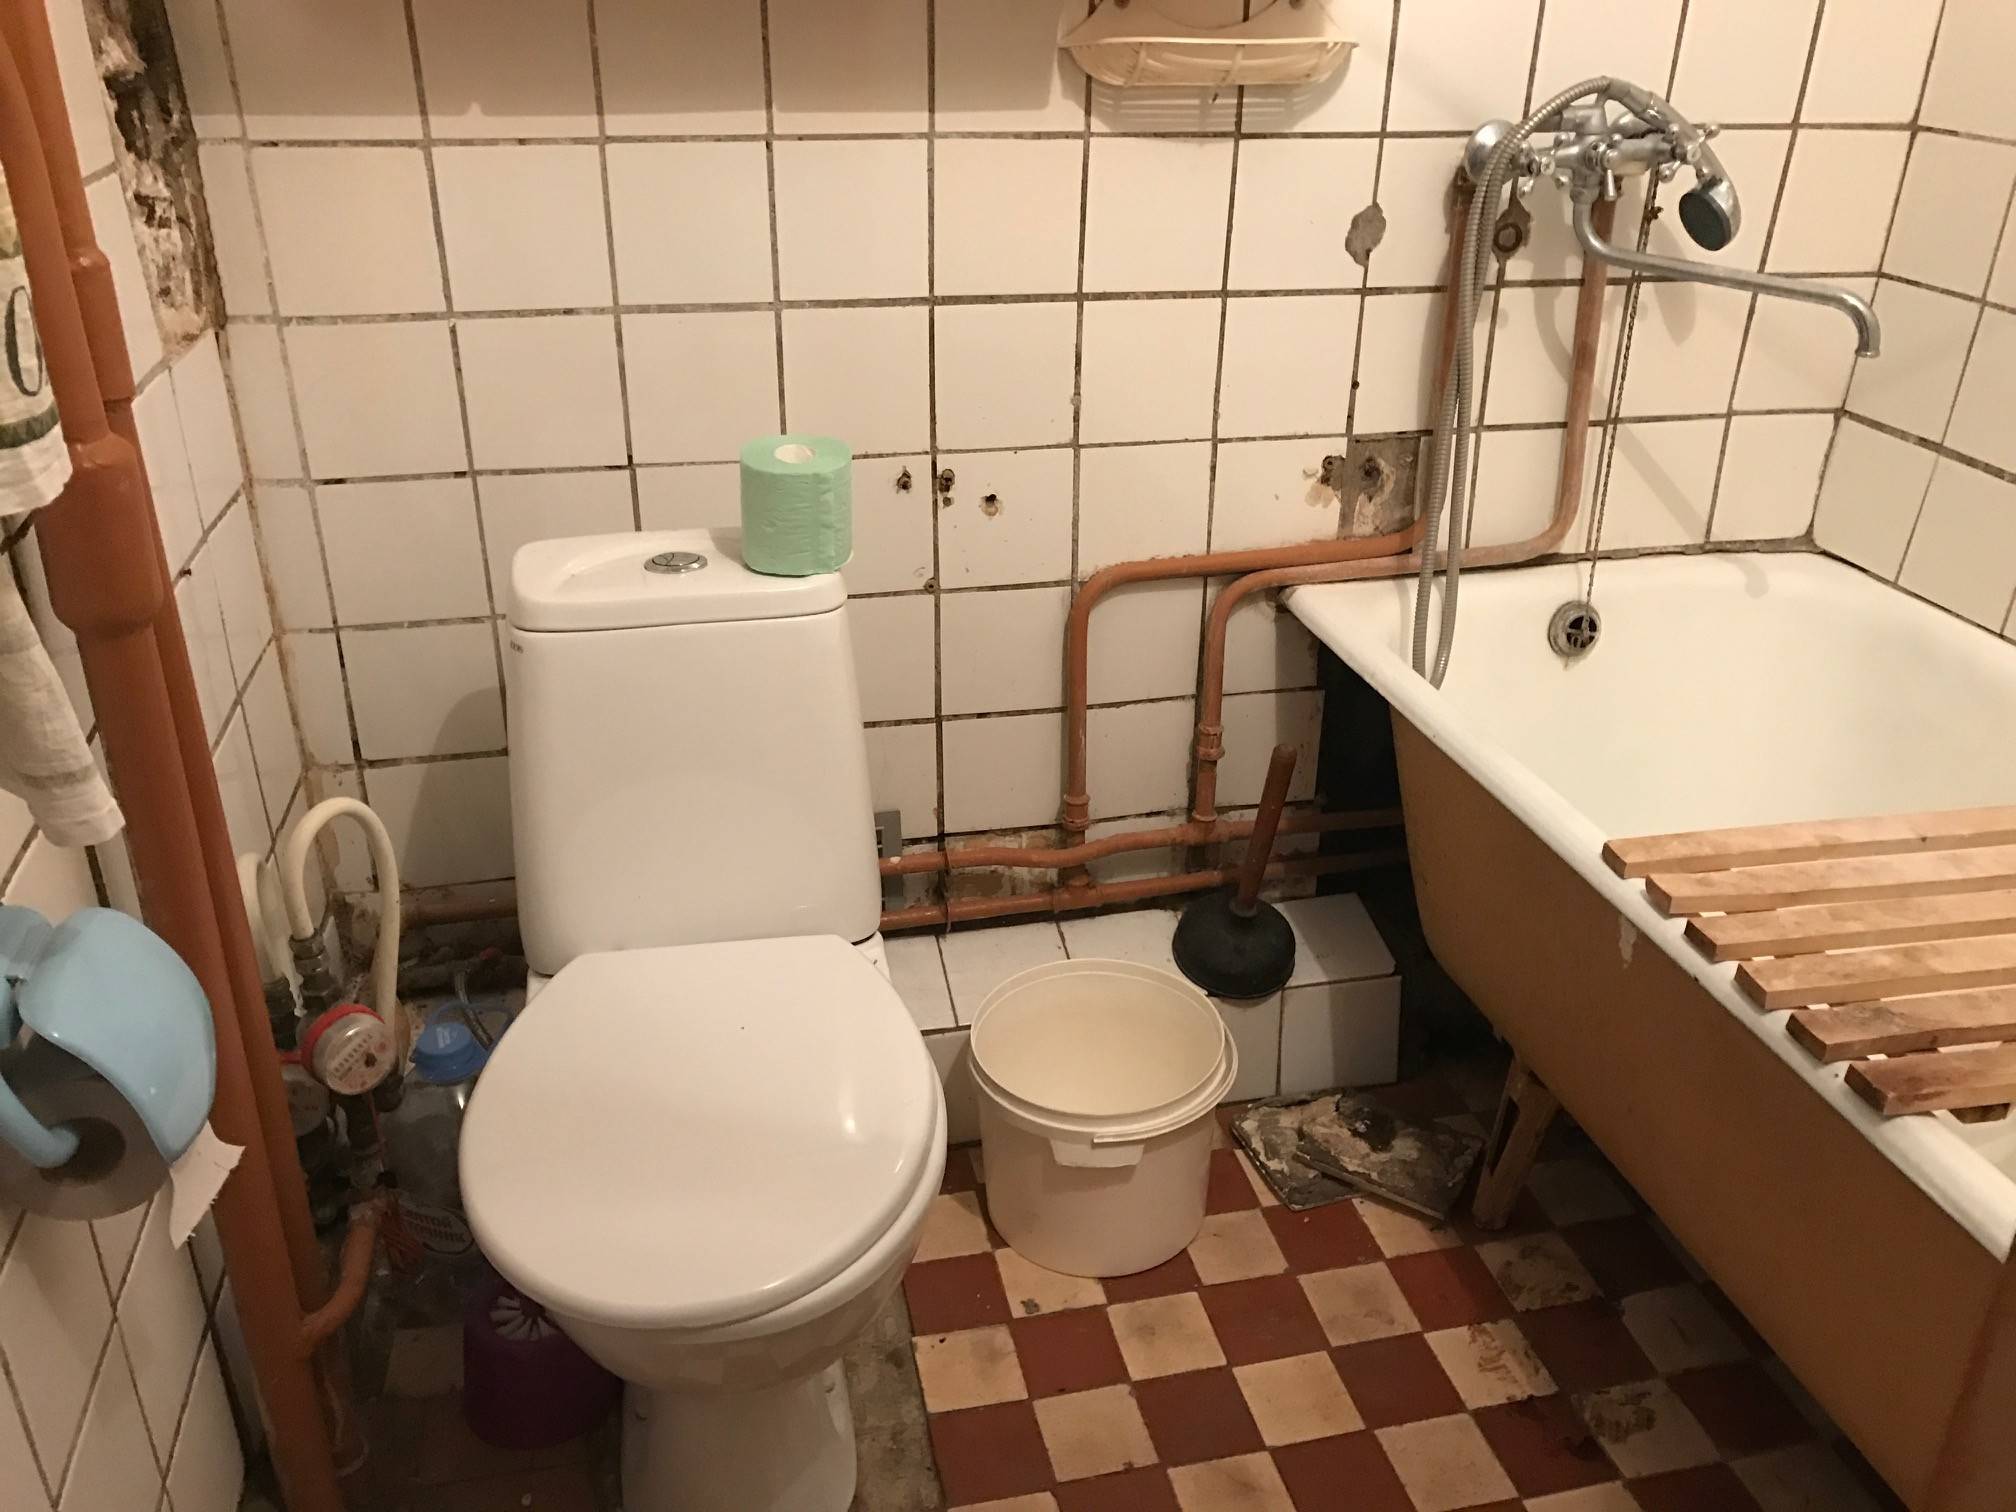 Ремонт ванной комнаты под ключ частным мастером в Москве